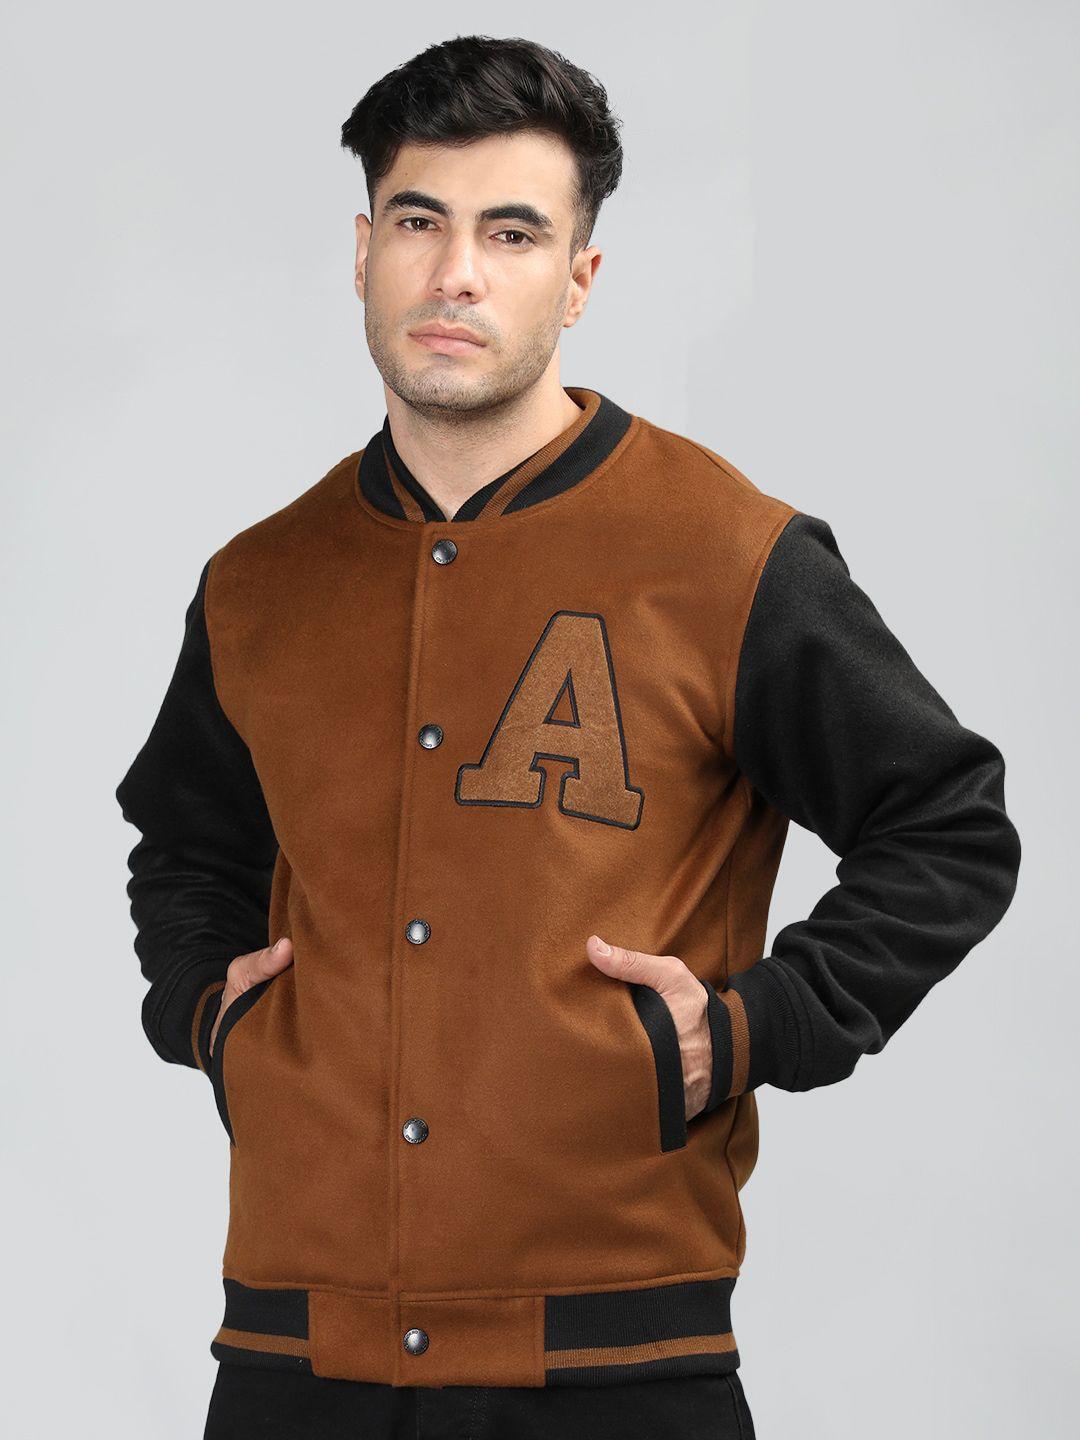 chkokko colourblocked woollen lightweight outdoor varsity jacket